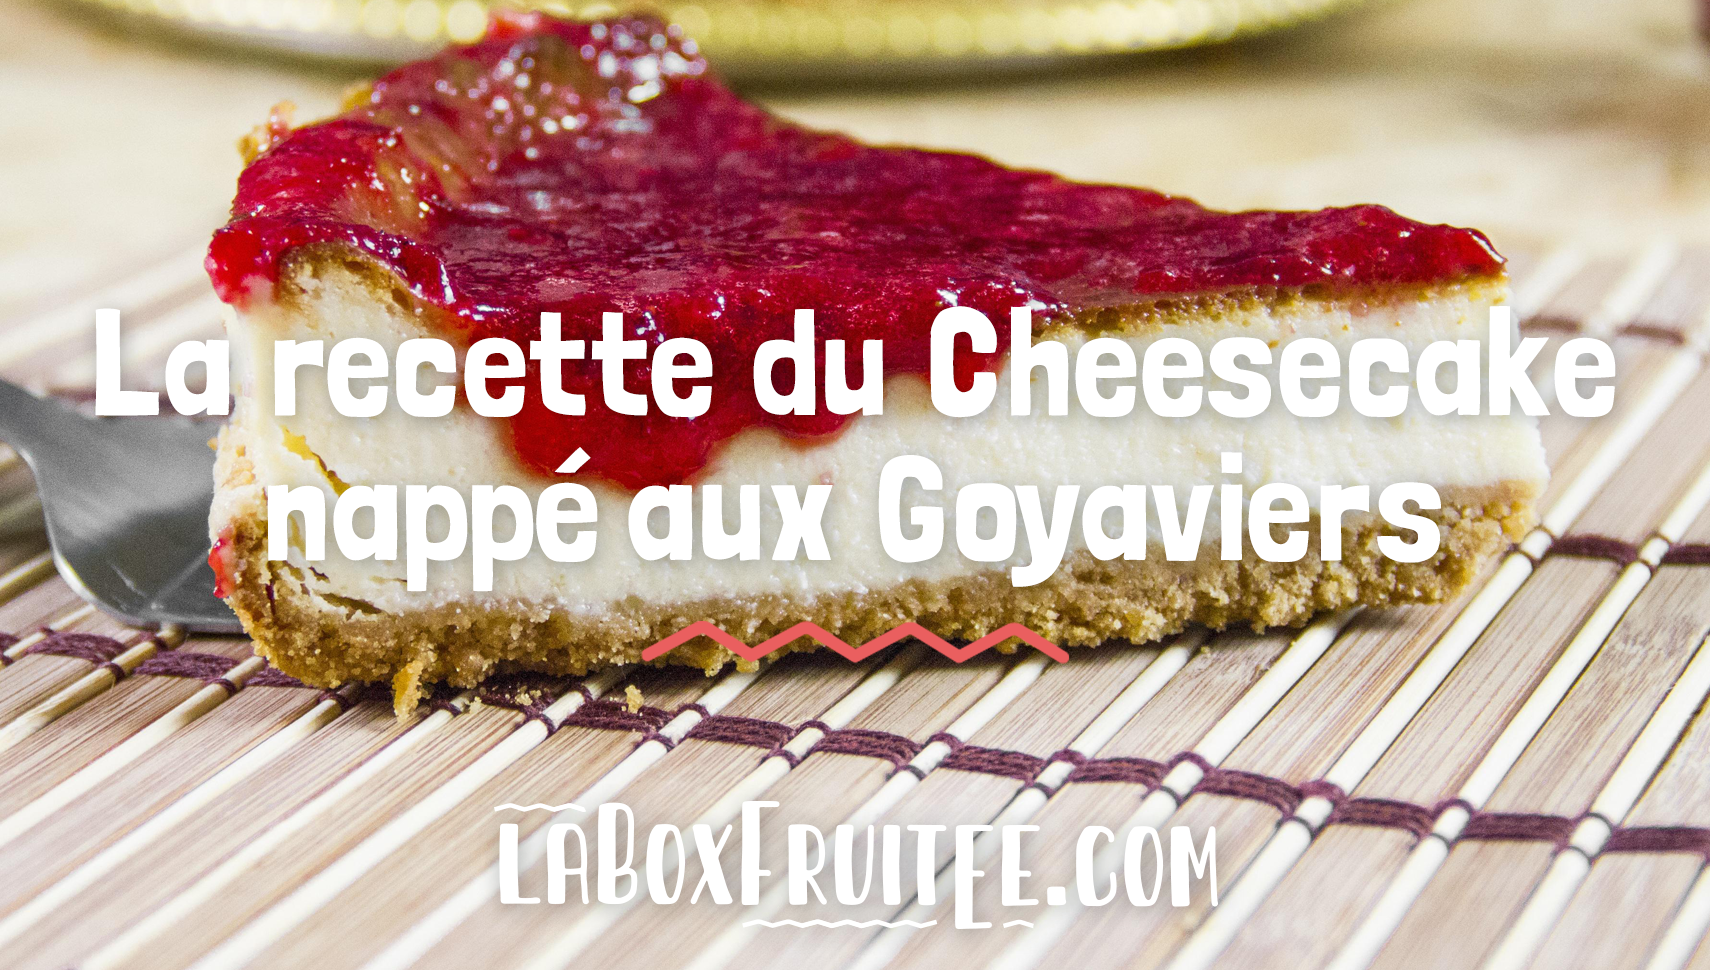 Cheesecake Goyaviers